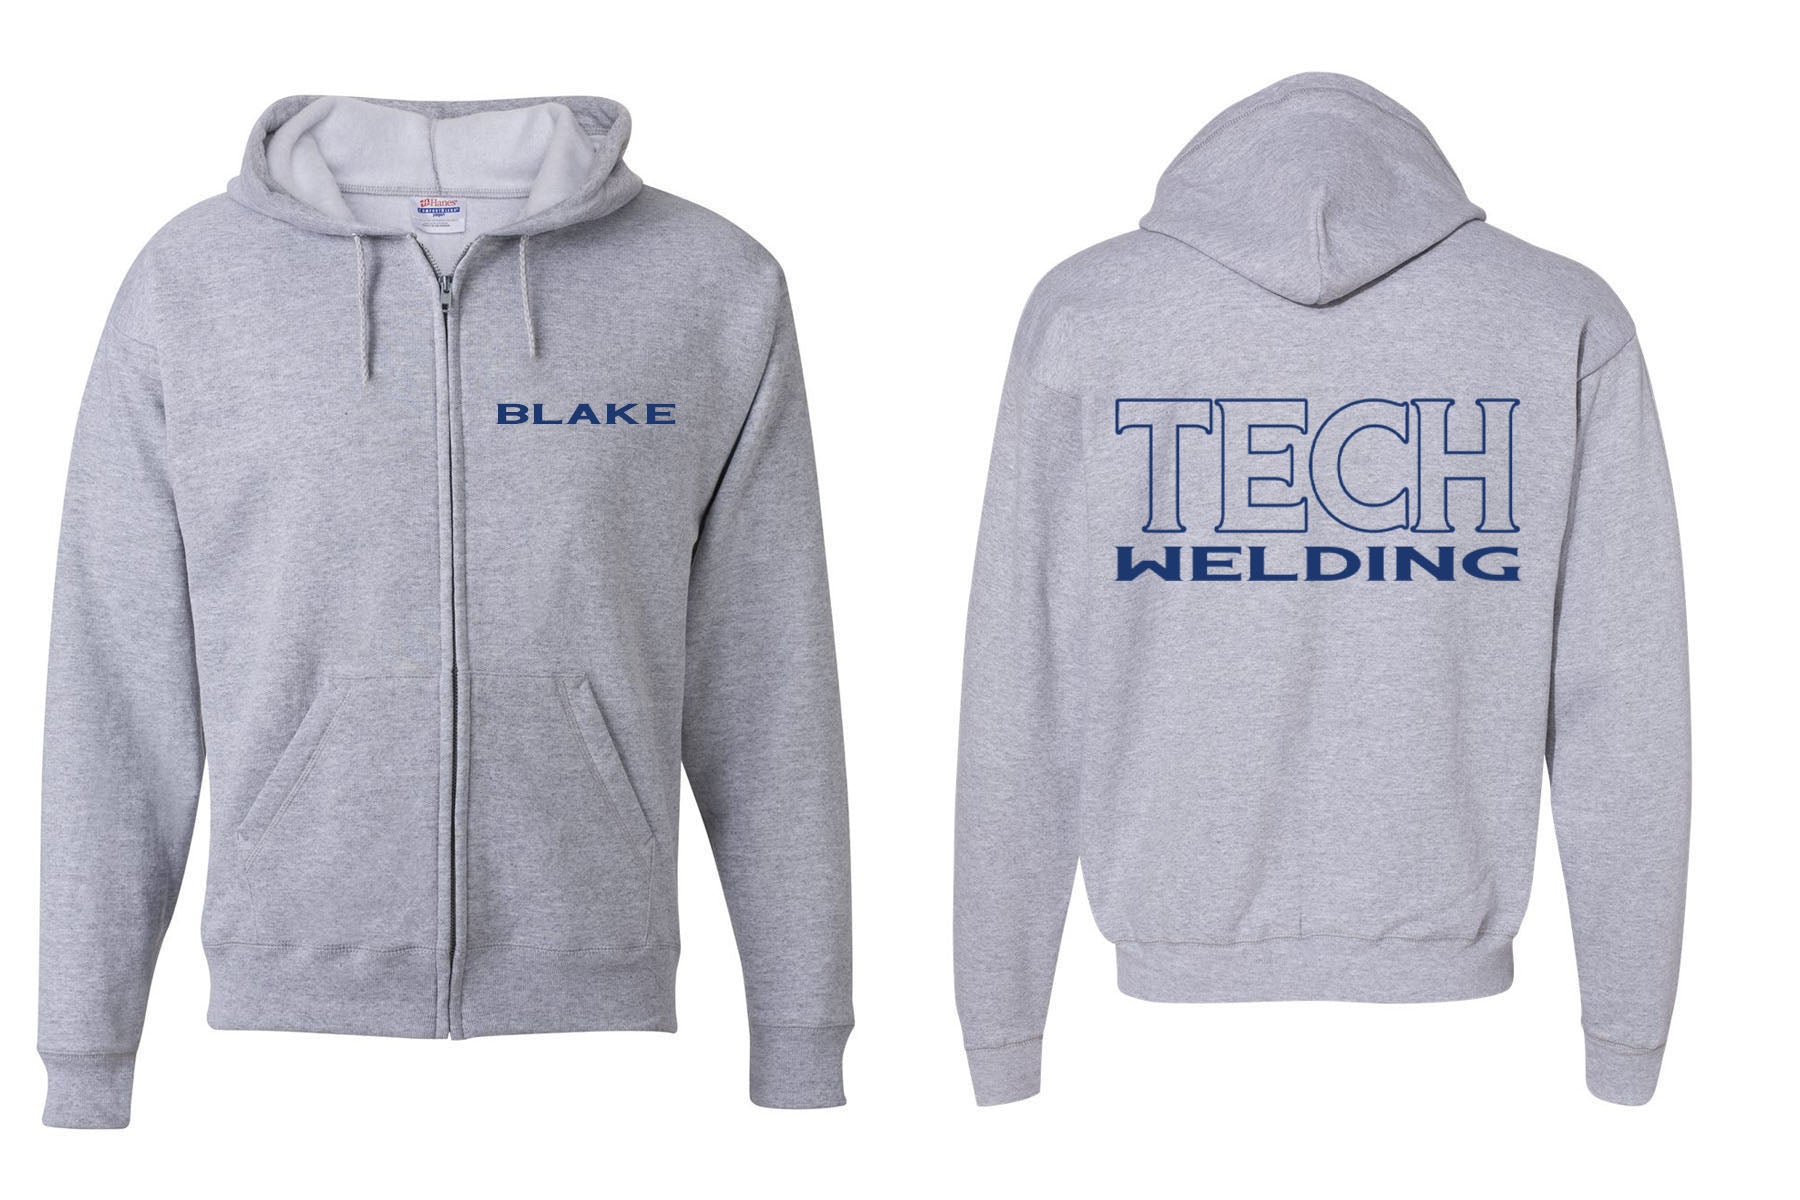 Sussex Tech Welding design 3 Zip up Sweatshirt